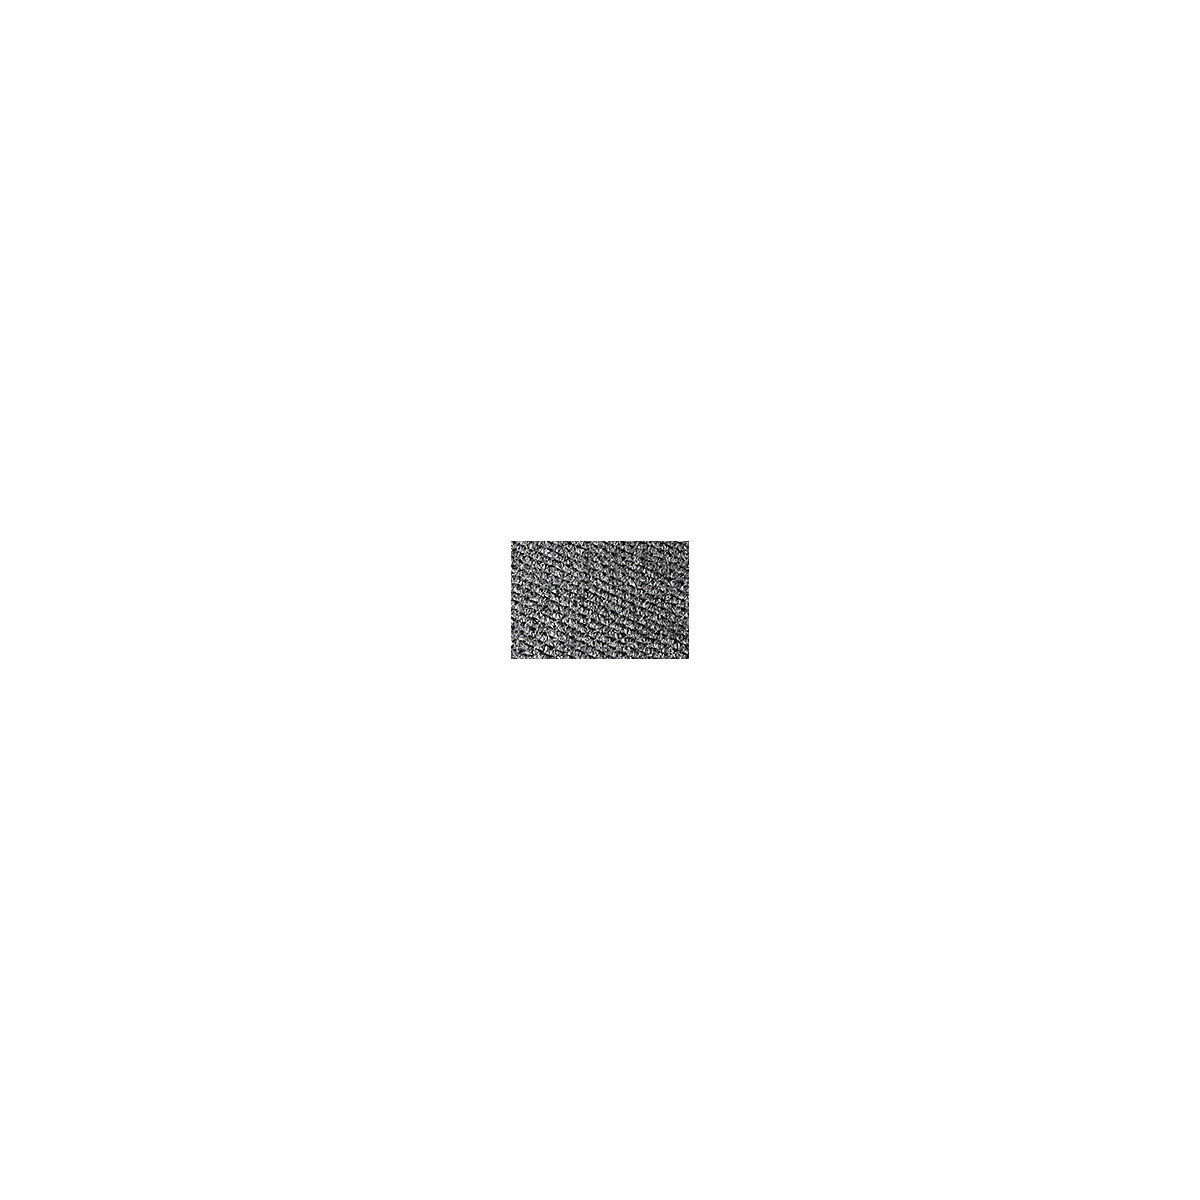 Naaldvilt loper – COBA, breedte 1000 mm, per str. m, antraciet-3